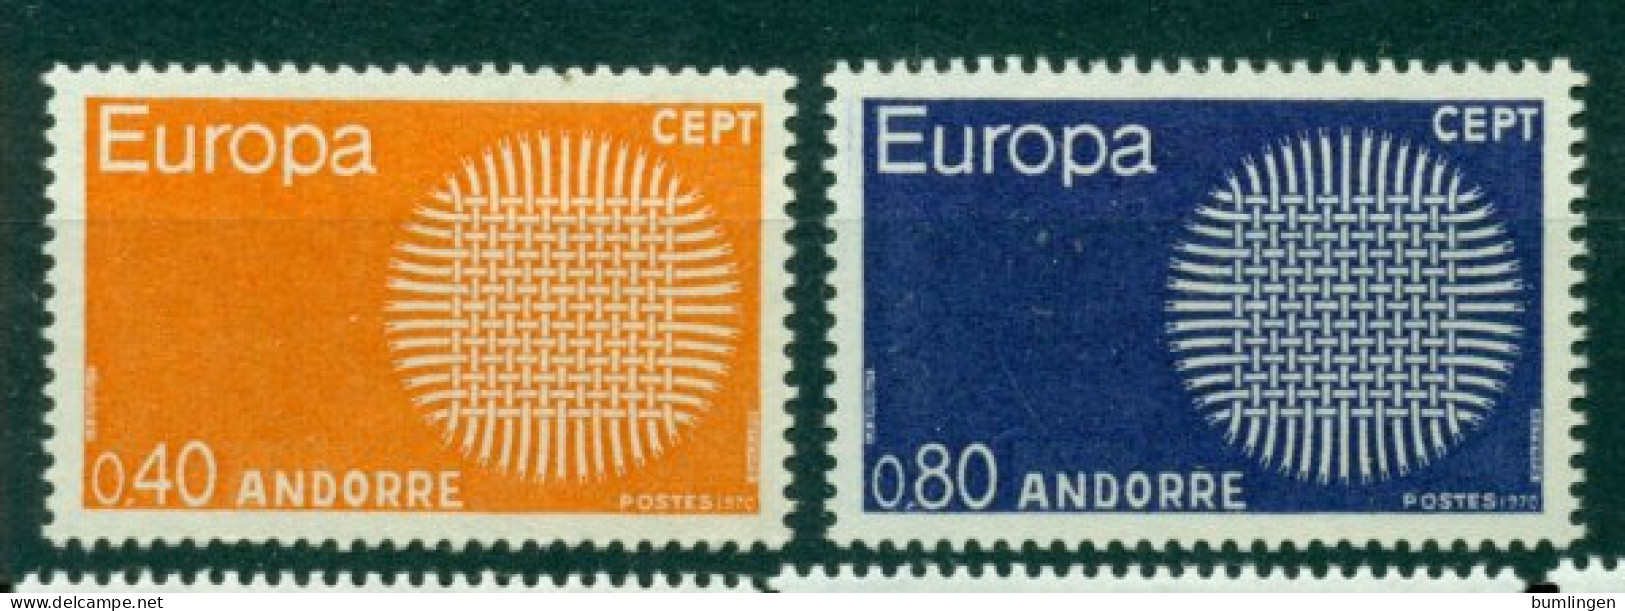 ANDORRA (French) 1977 Mi 222-23** Europa CEPT [L3833] - 1977